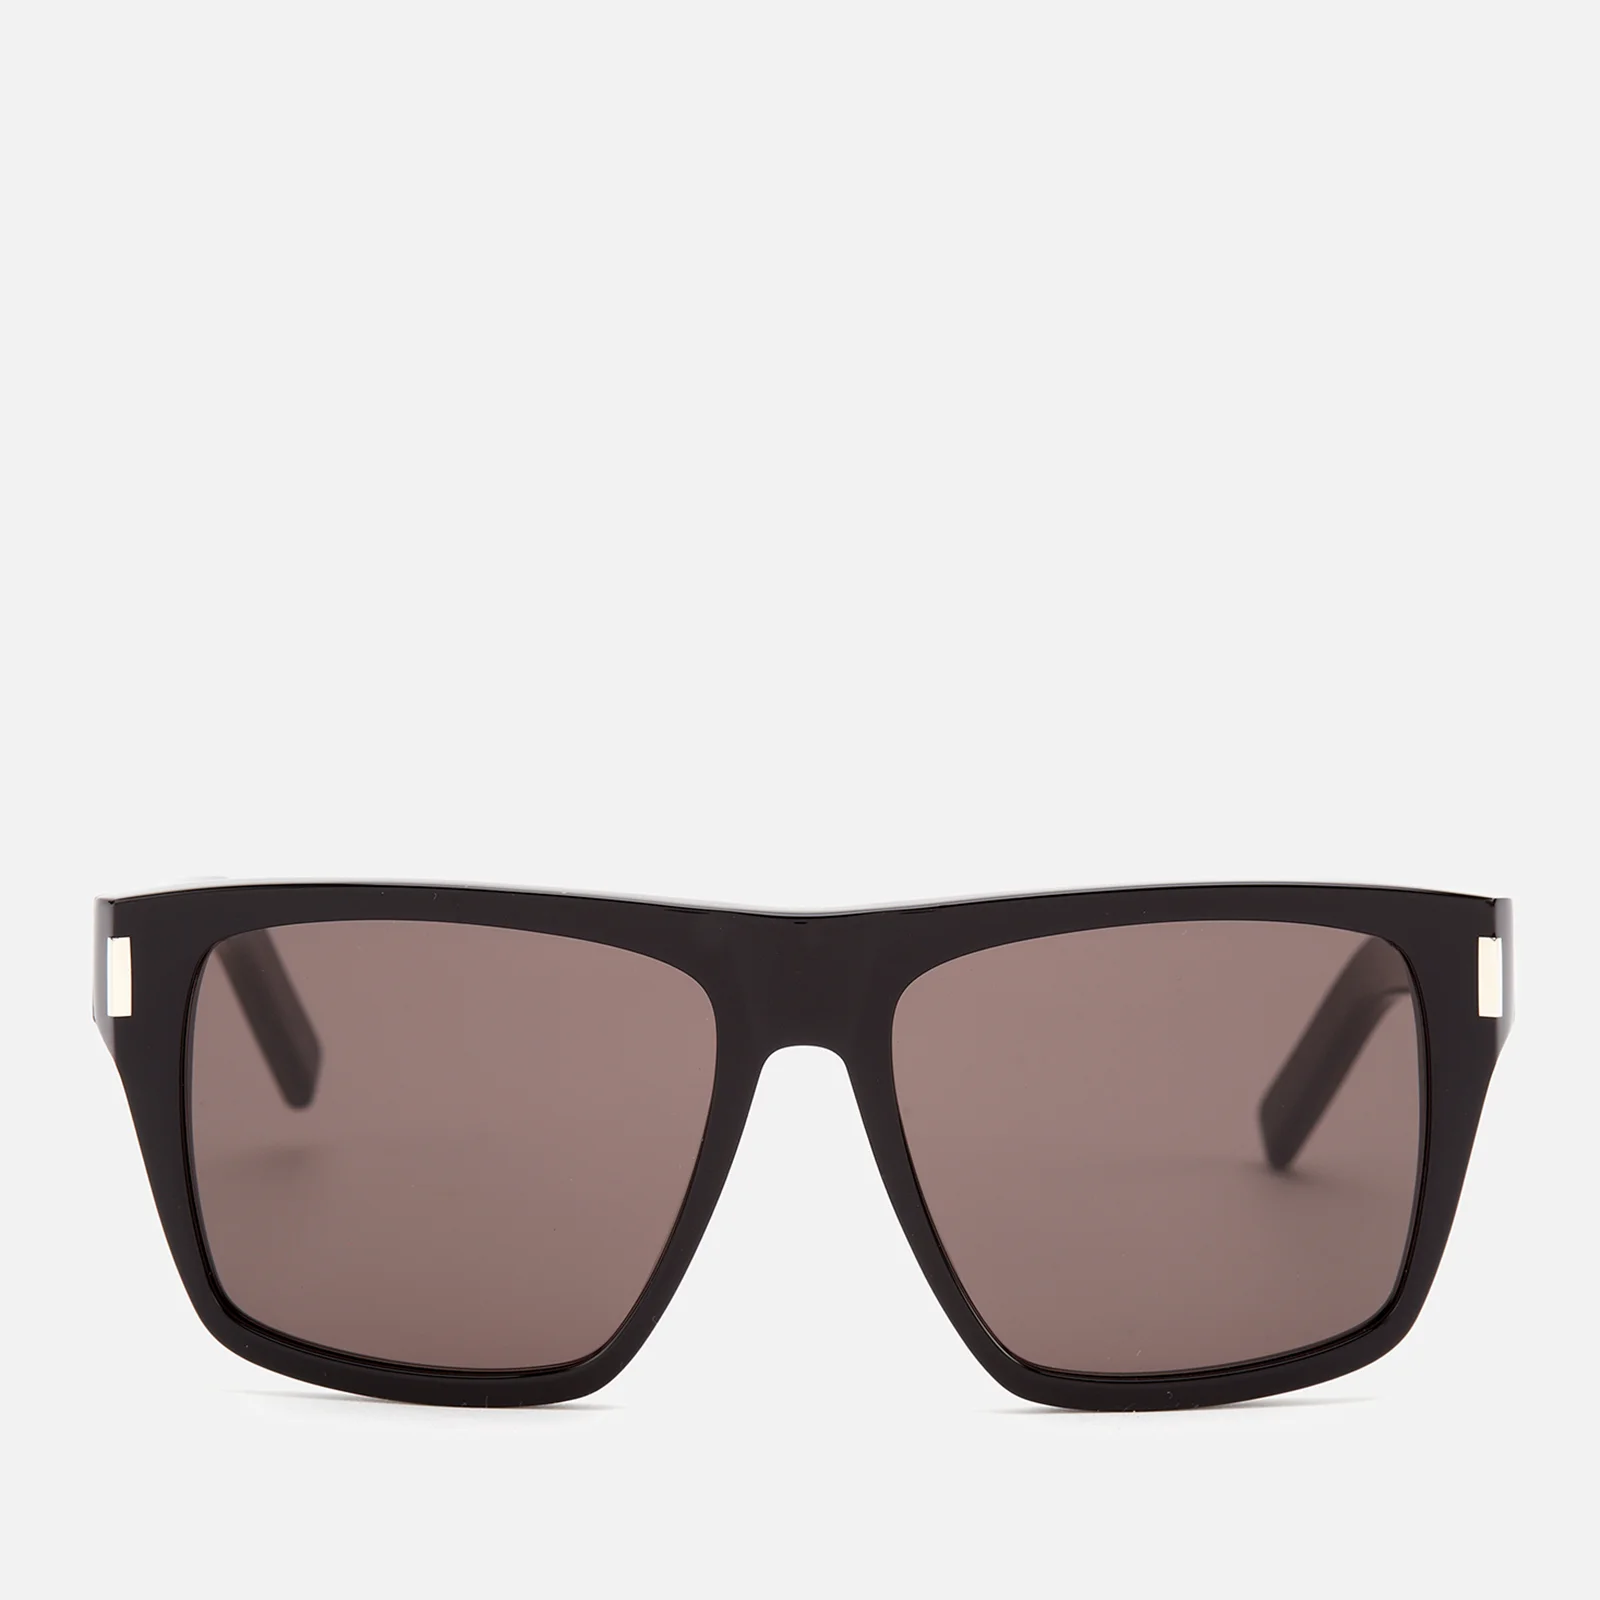 Saint Laurent Women's D-Frame Acetate Sunglasses - Black Image 1